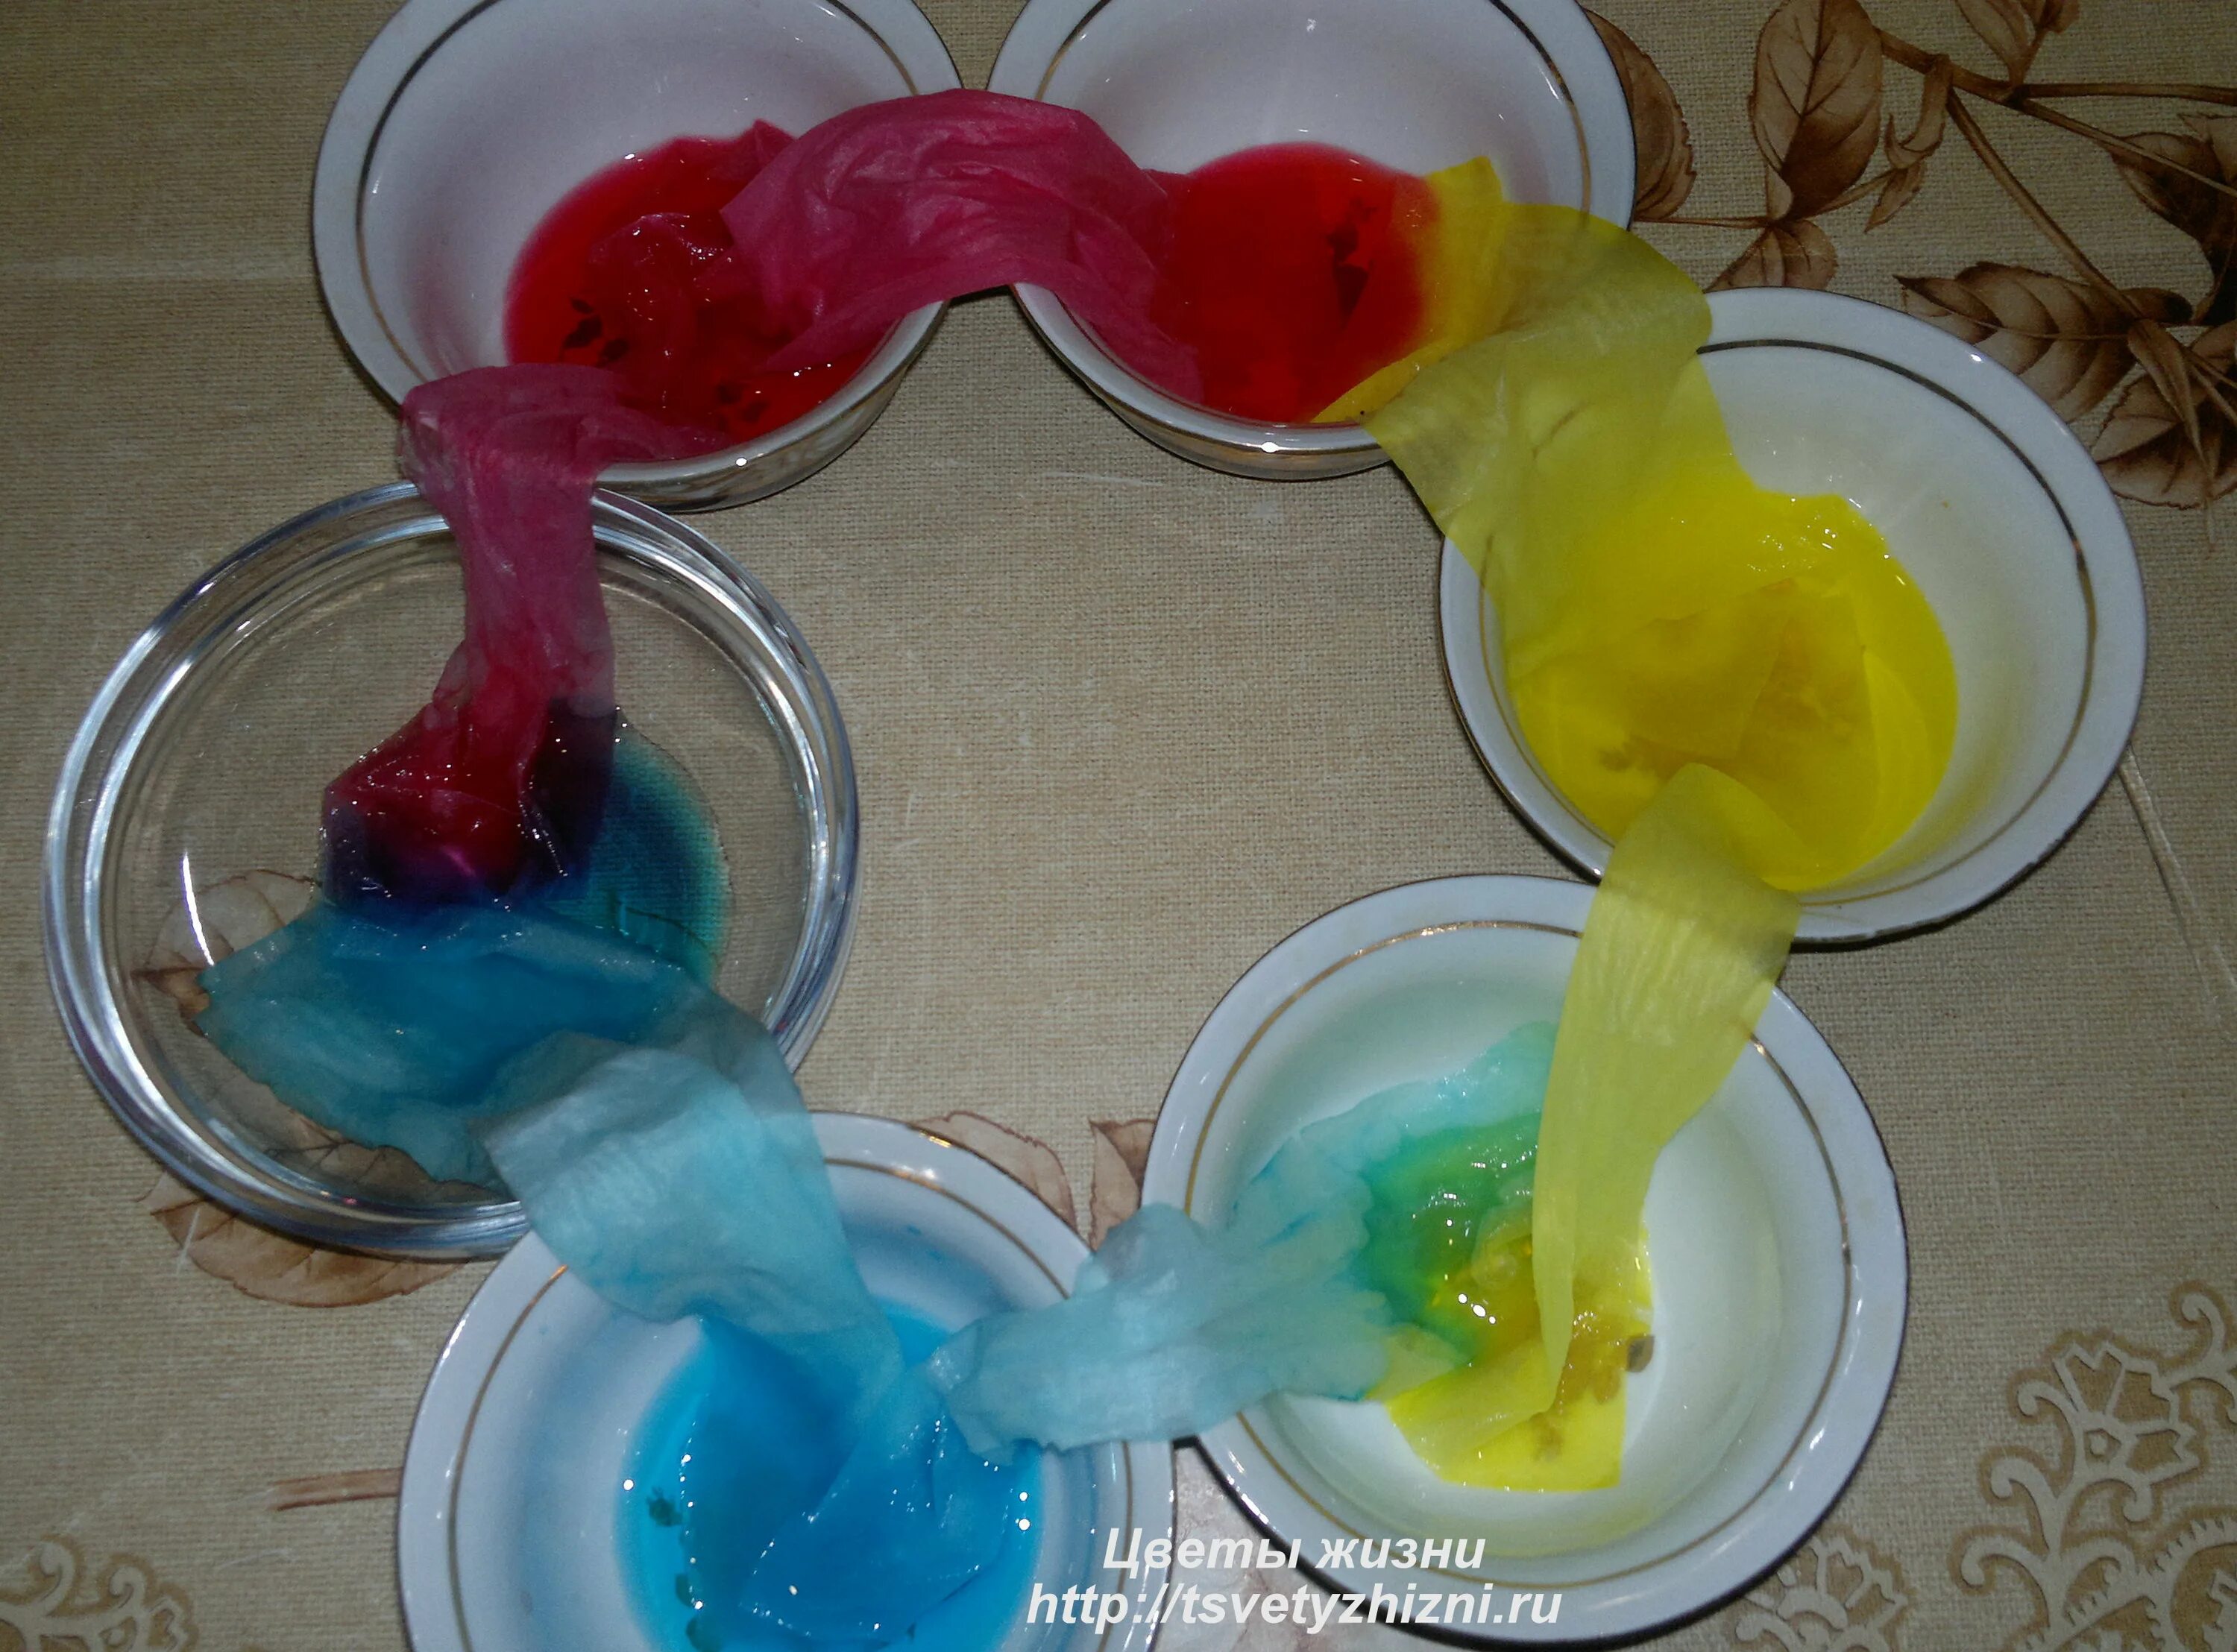 Опыт цветной. Опыты с красками. Опыты с красителями для детей. Эксперименты с красками. Эксперименты с красителями для детей.